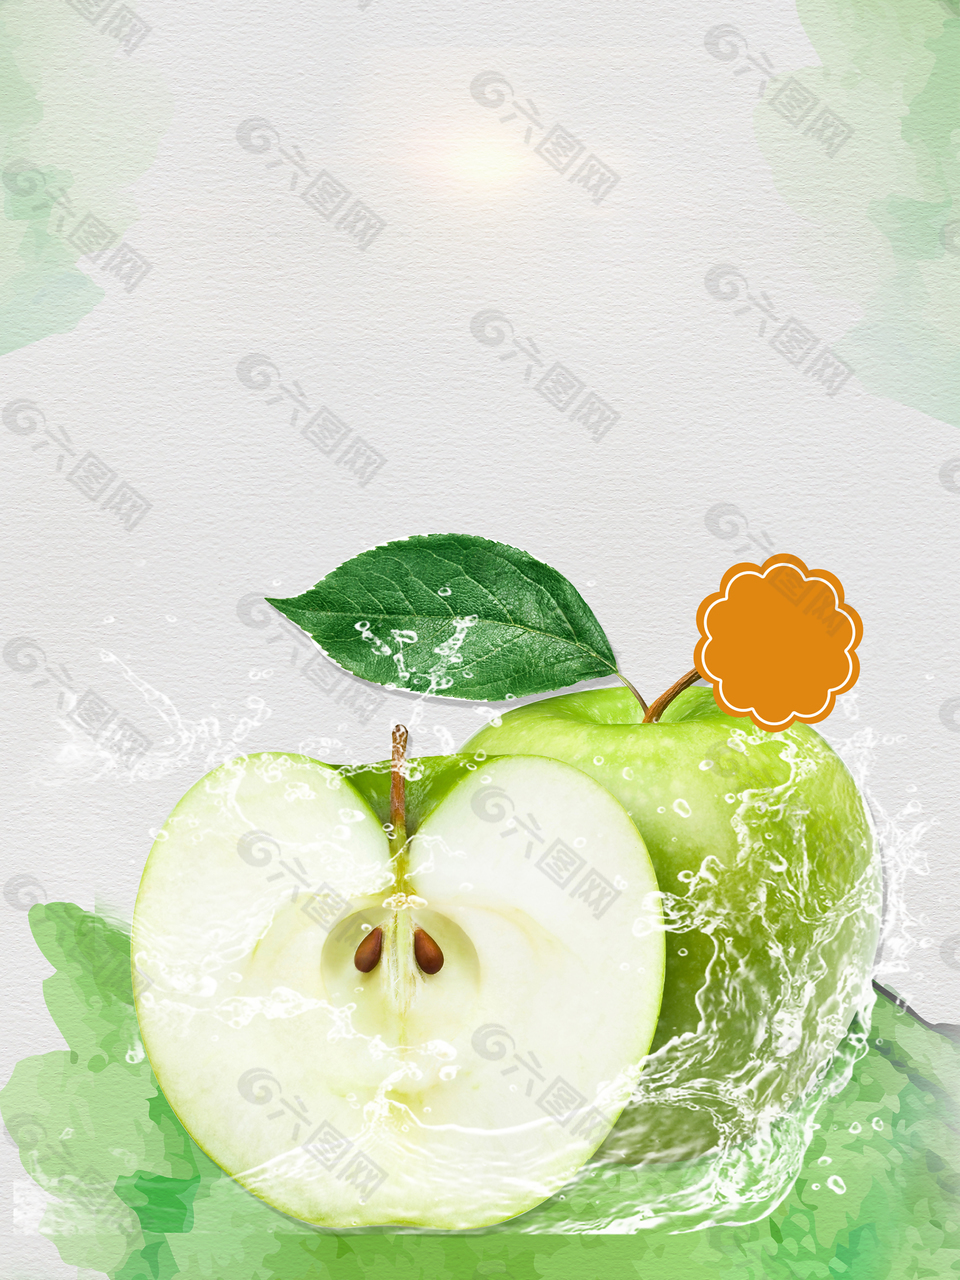 天然新鲜水果青苹果背景模板